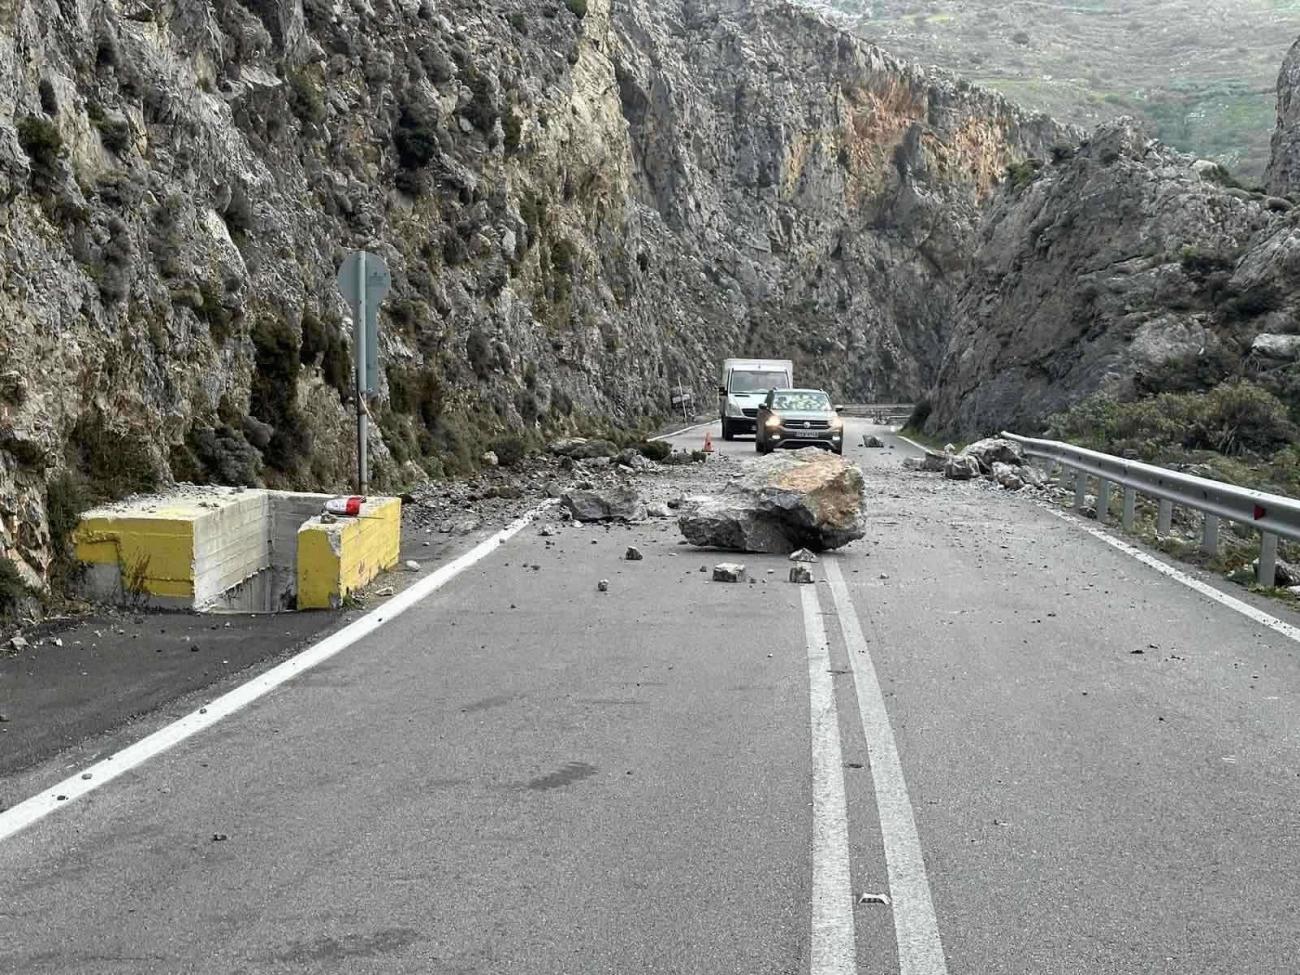 Ρέθυμνο: Αποκολλήθηκε βράχος και διέλυσε αυτοκίνητο – Σώθηκε από θαύμα ο οδηγός